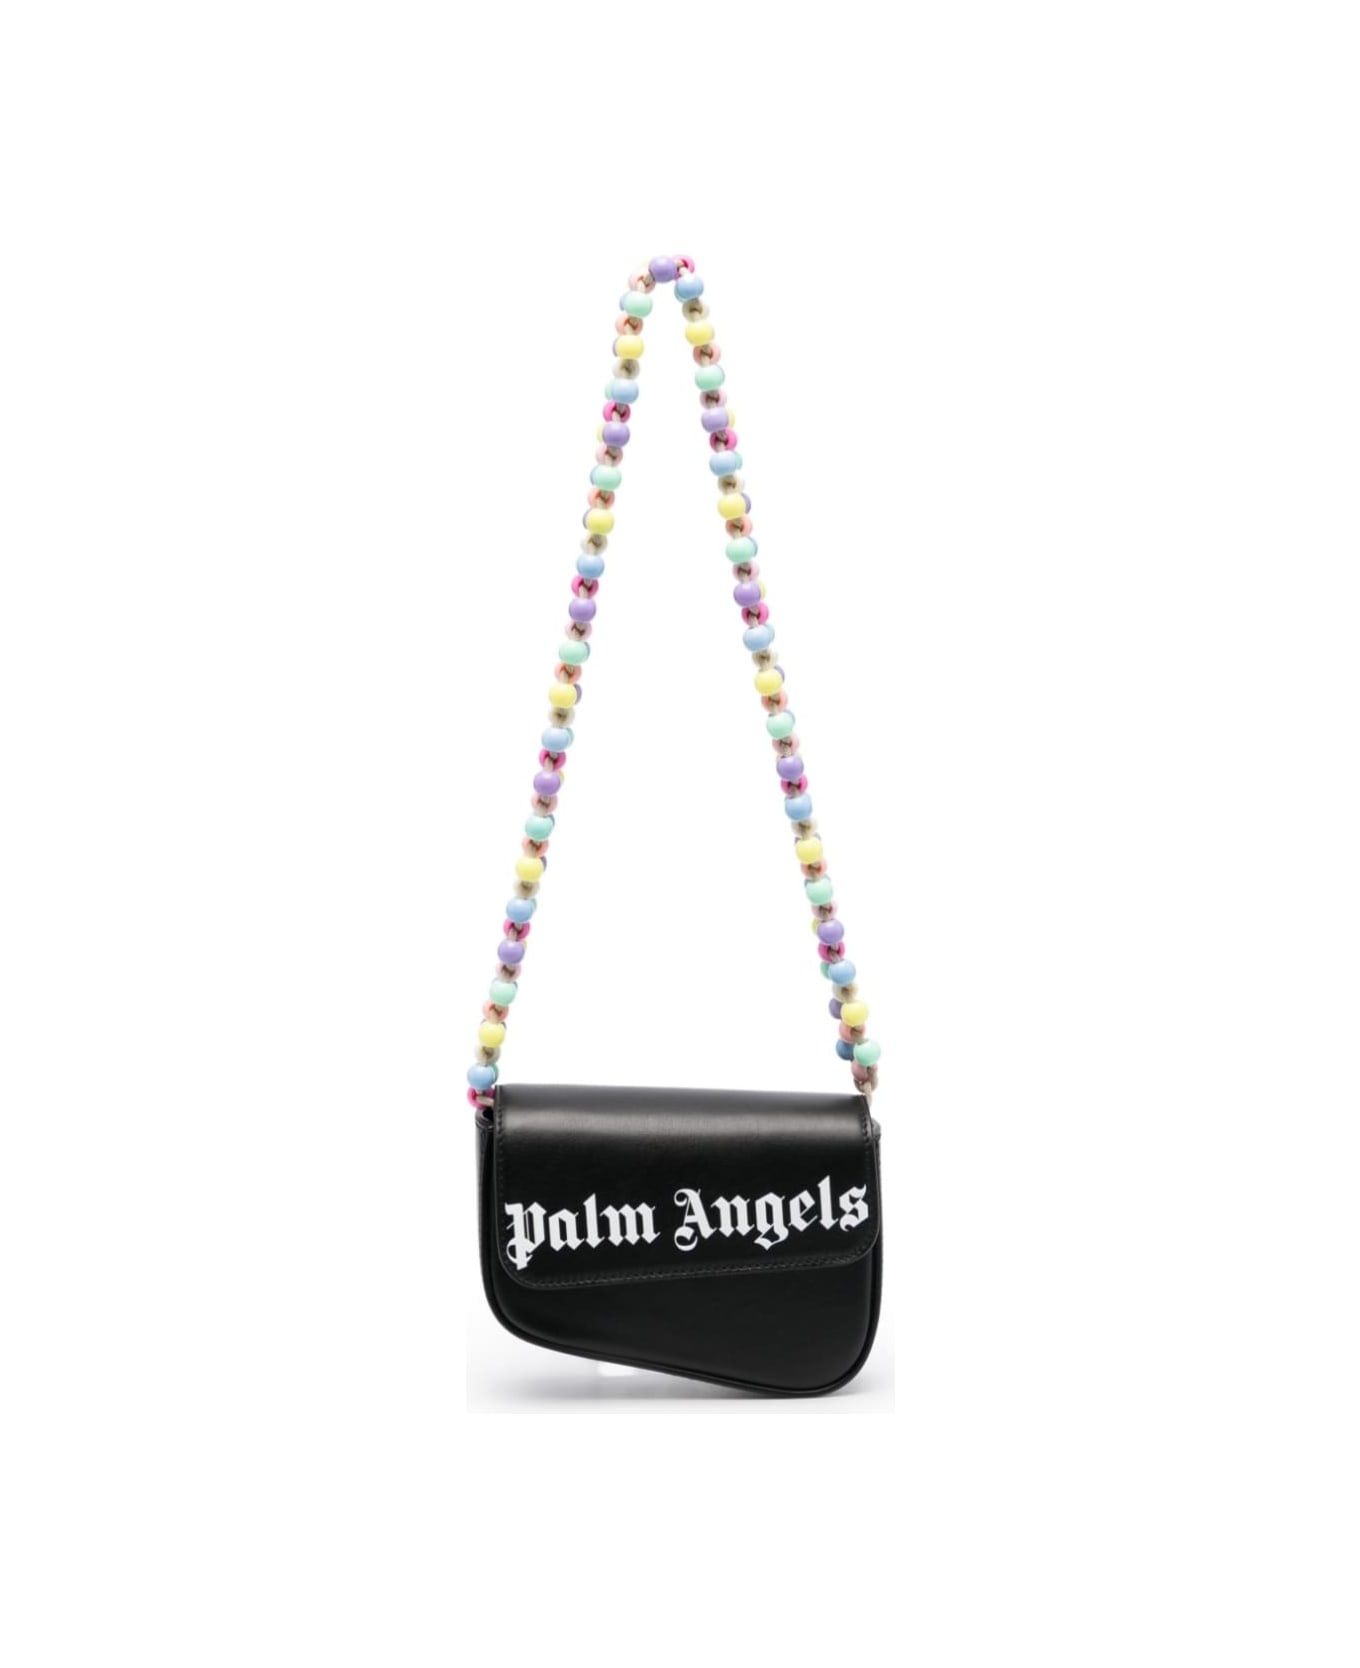 Palm Angels Mini Crash Beads Embellished Shoulder Bag In Black Leather Woman - Black